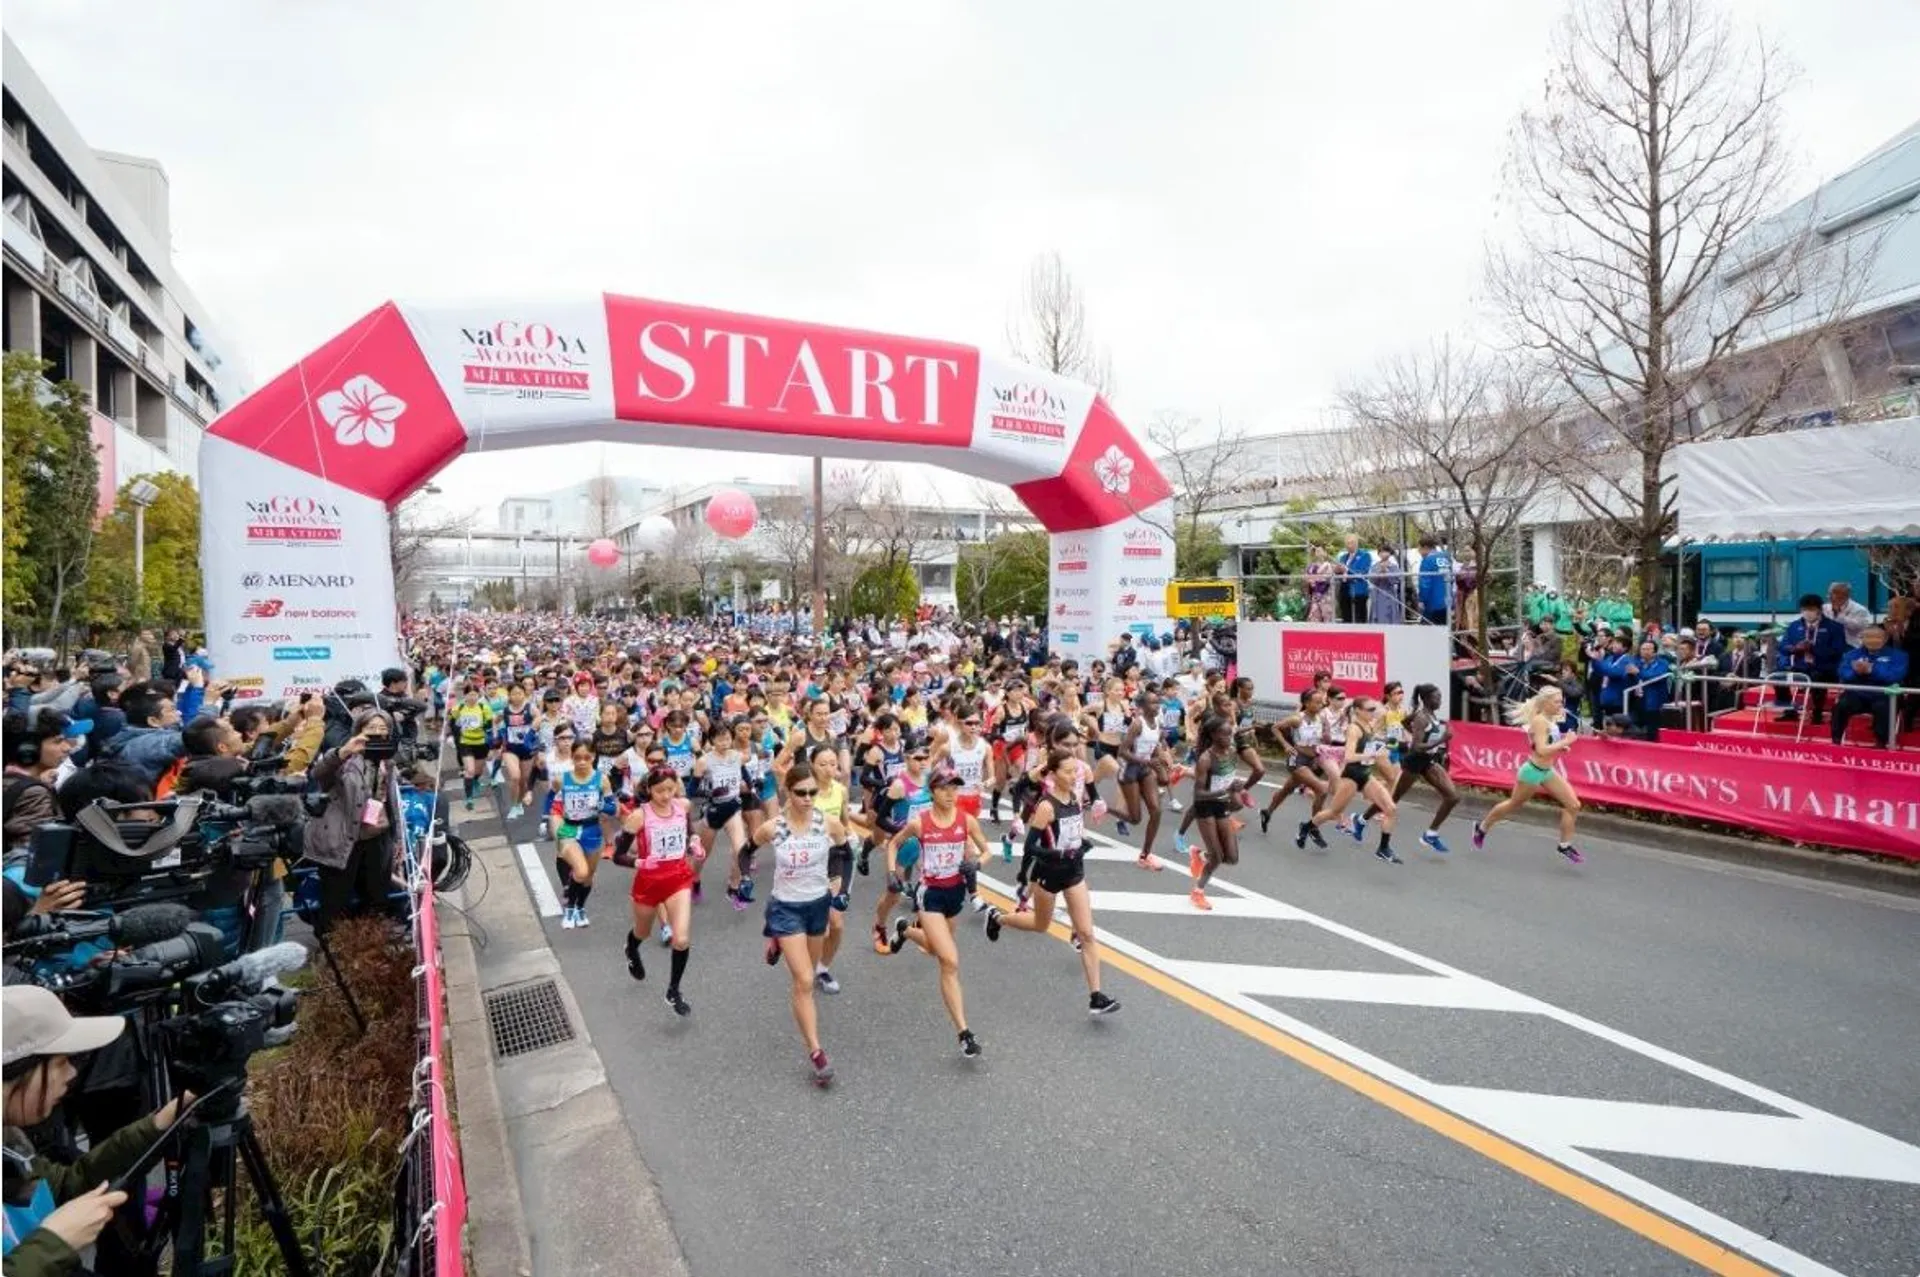 Nagoya International Women's Marathon